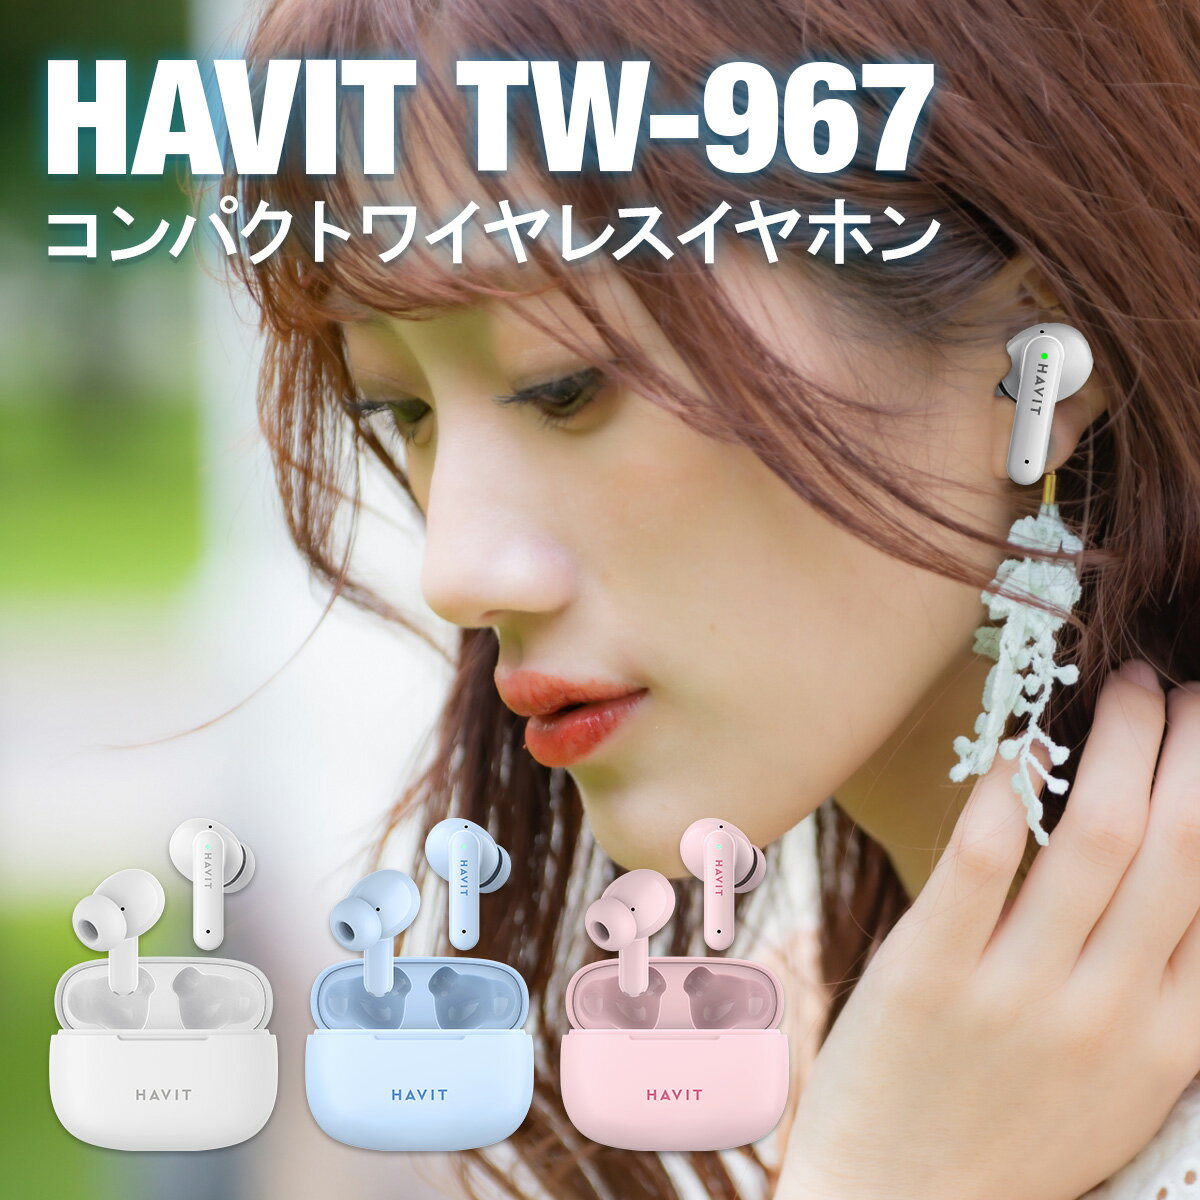 【イヤホンもおしゃれに】ワイヤレスイヤホン Havit TW967 Bluetooth イヤホン 完全 ワイヤレス 高音質 小型 軽量 日本 安心 サポート ホワイト ブルー ピンク コスパ おしゃれ カラー 軽い かわいい シンプル デザイン 初めて 安い